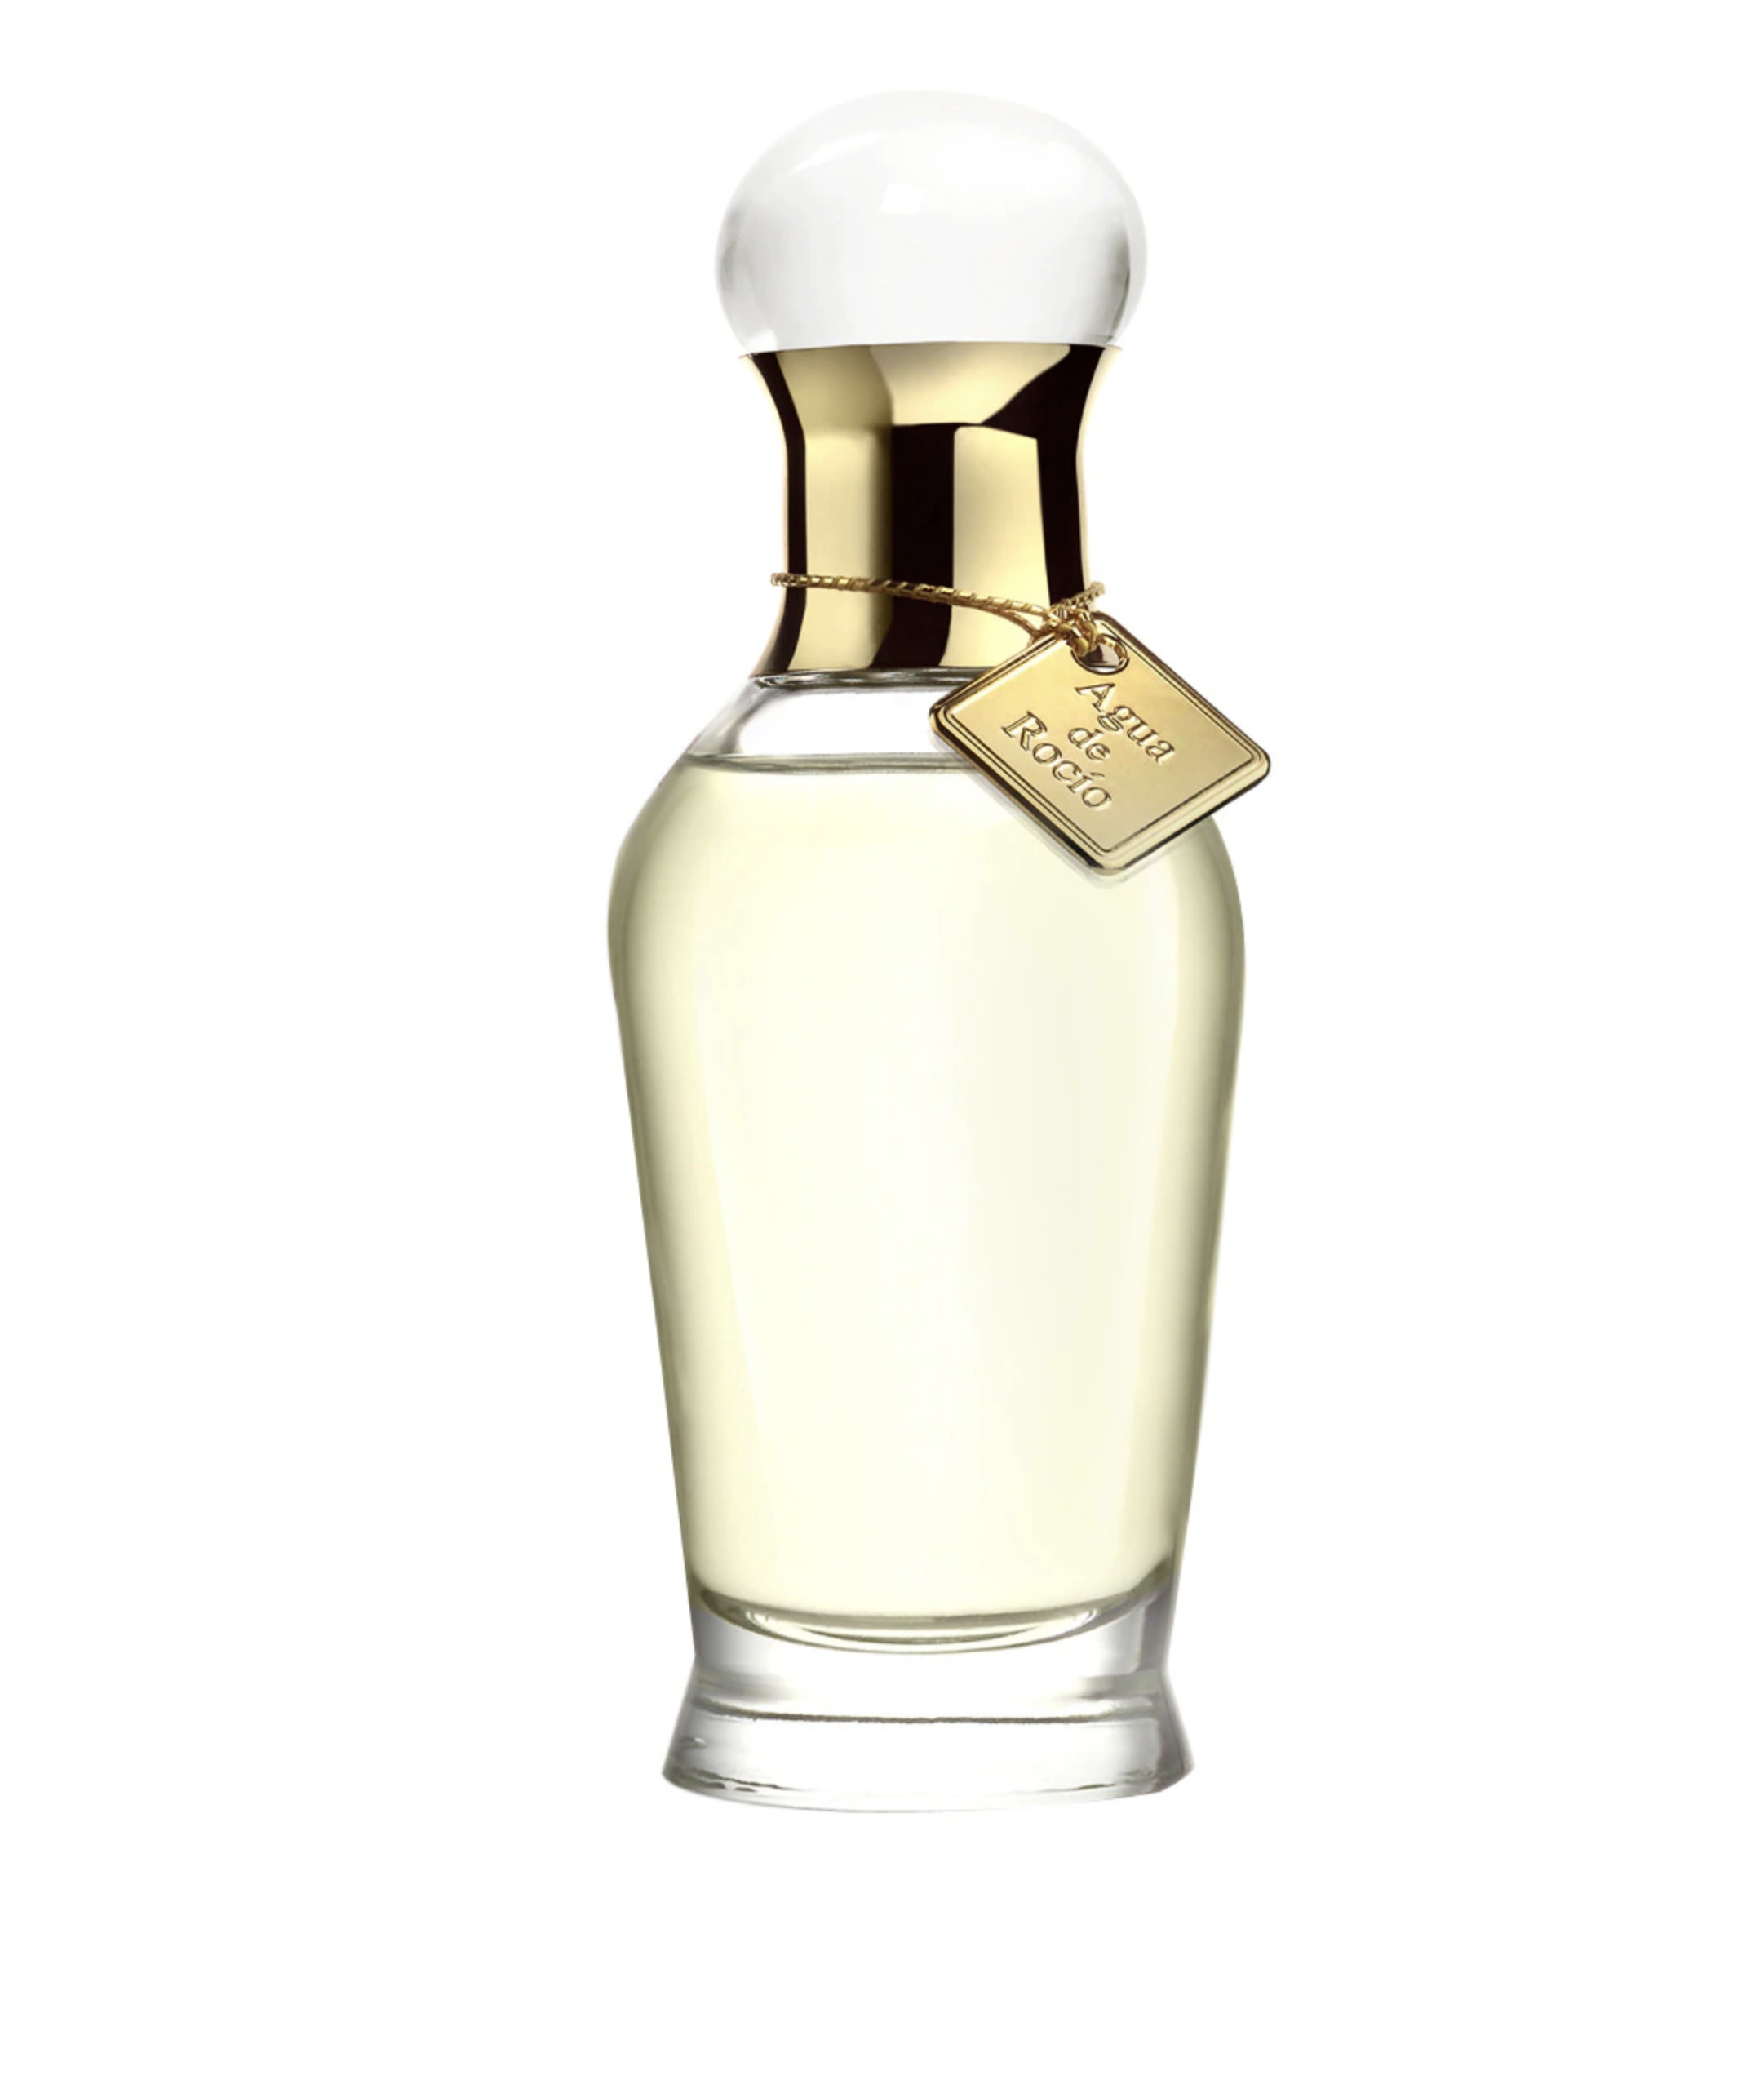 ALT: Perfumes originales para regalar en Navidad, por menos de 40 euros